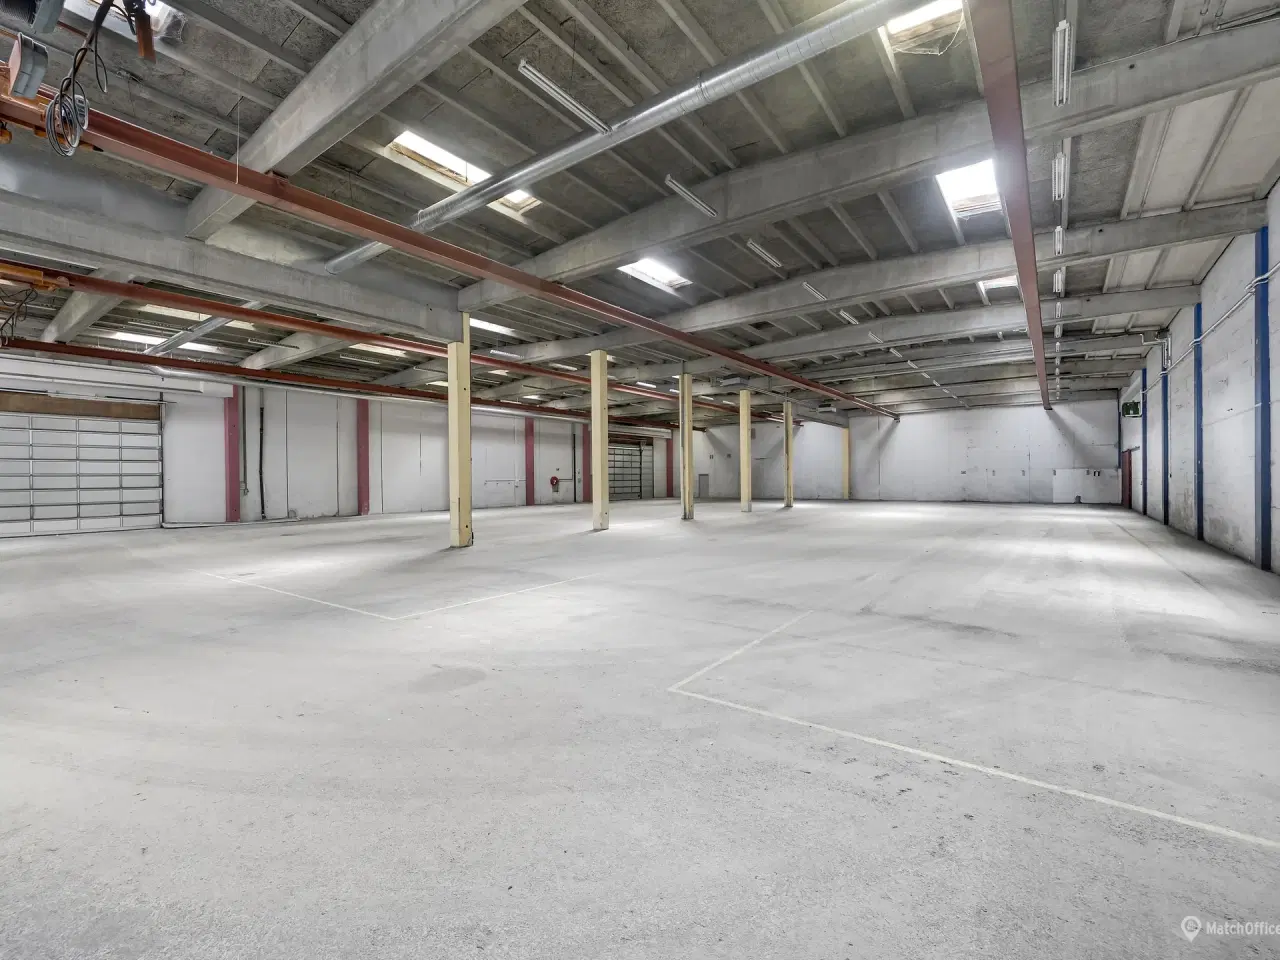 Billede 8 - 830 m² lager med 6 meters loftshøjde